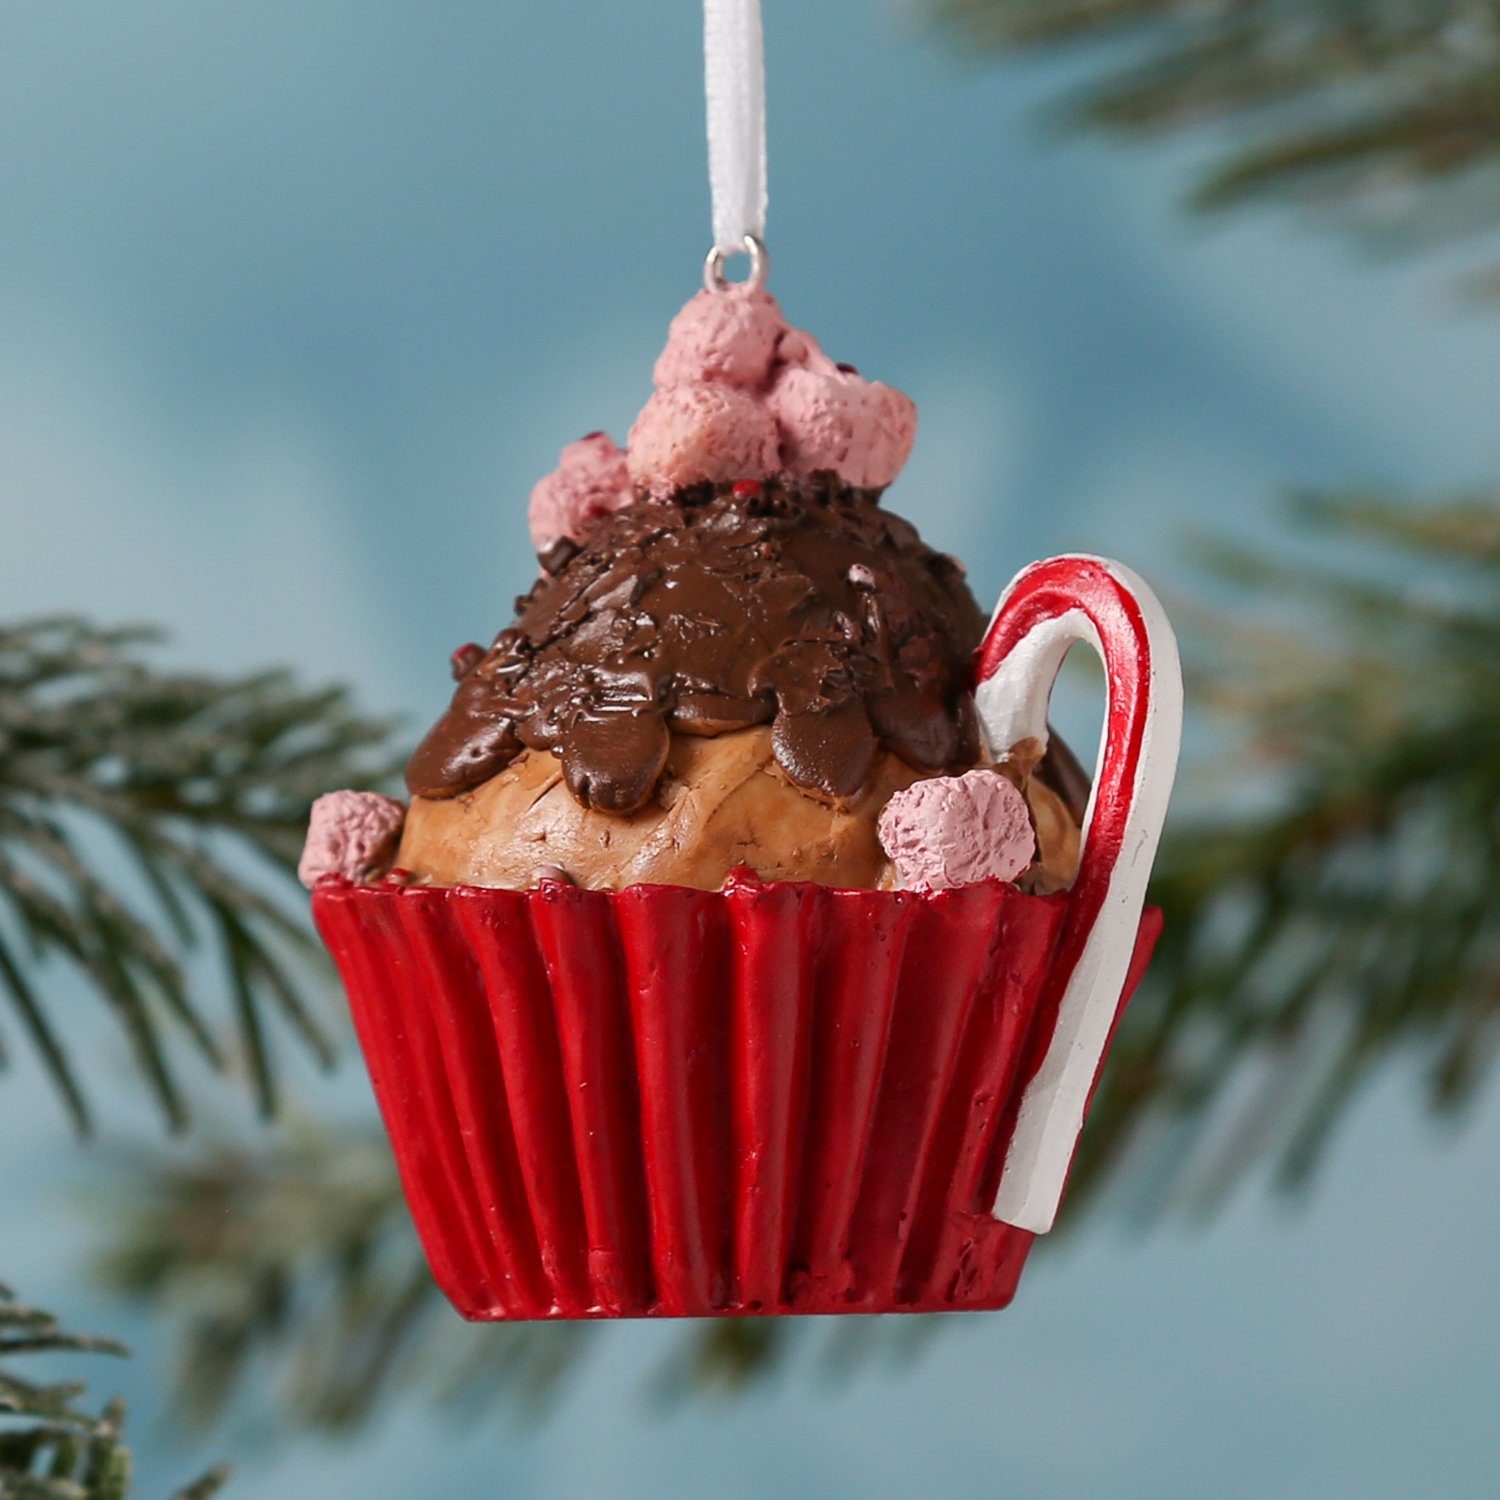 braun Törtchen Christbaumschmuck MARELIDA Geschenk H: 8cm Weihnachtsbaumschmuck Cupcake Muffin